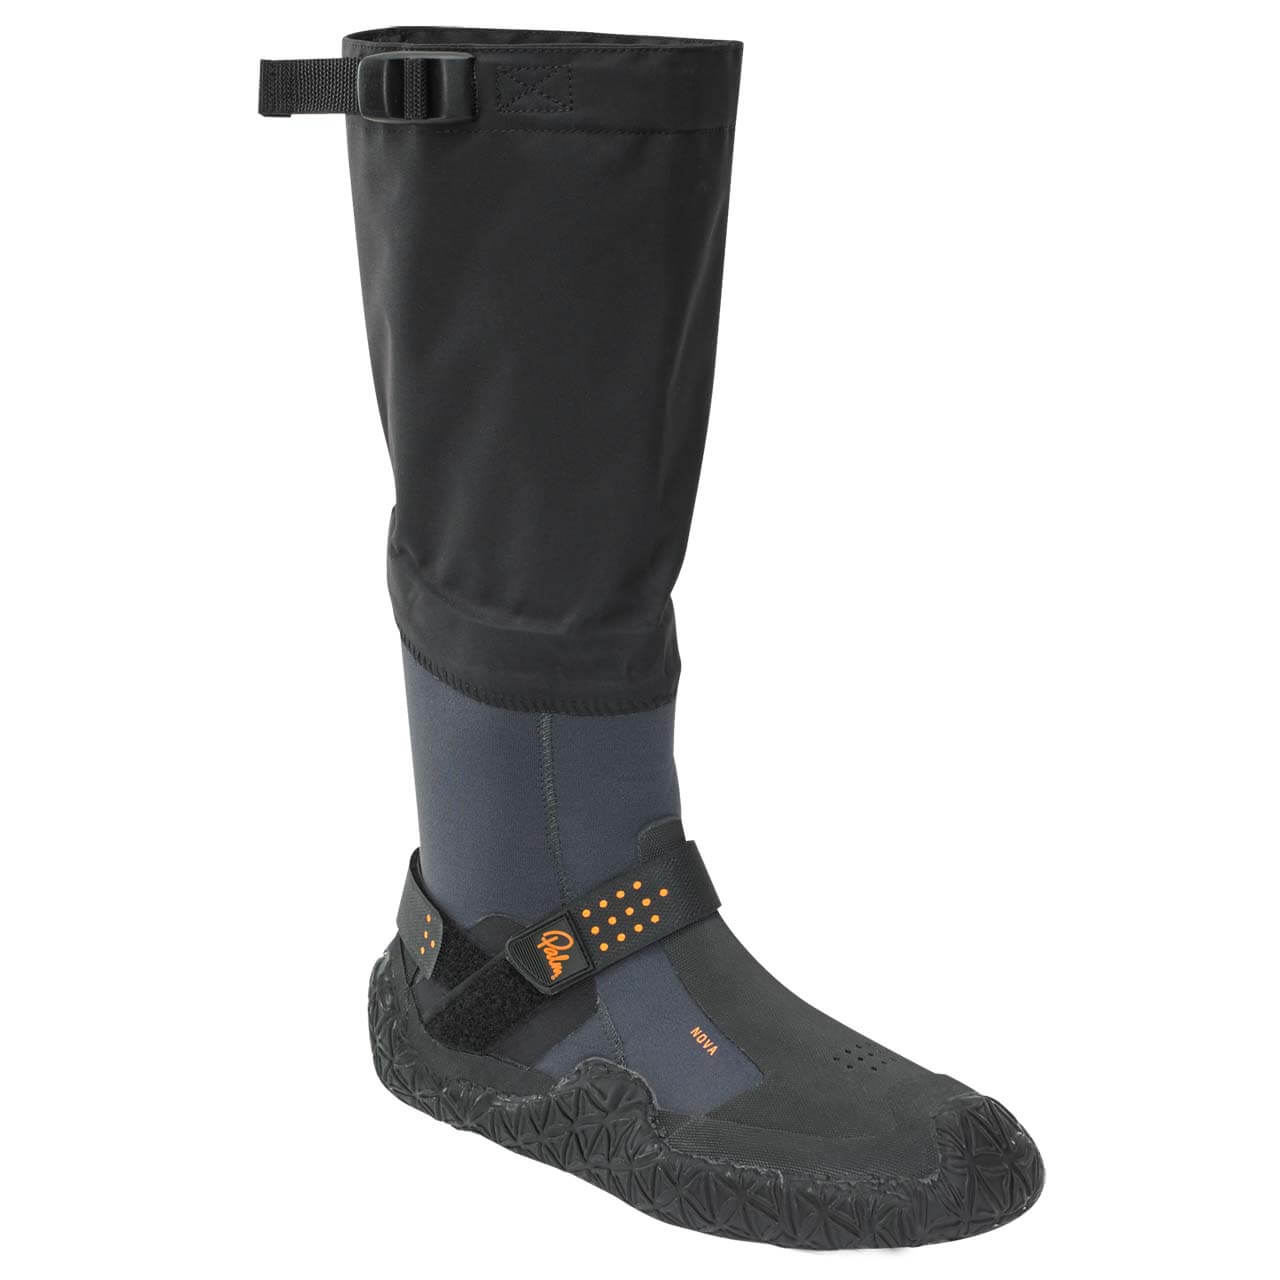 Palm Nova Boots - Jet Grey, UK 7